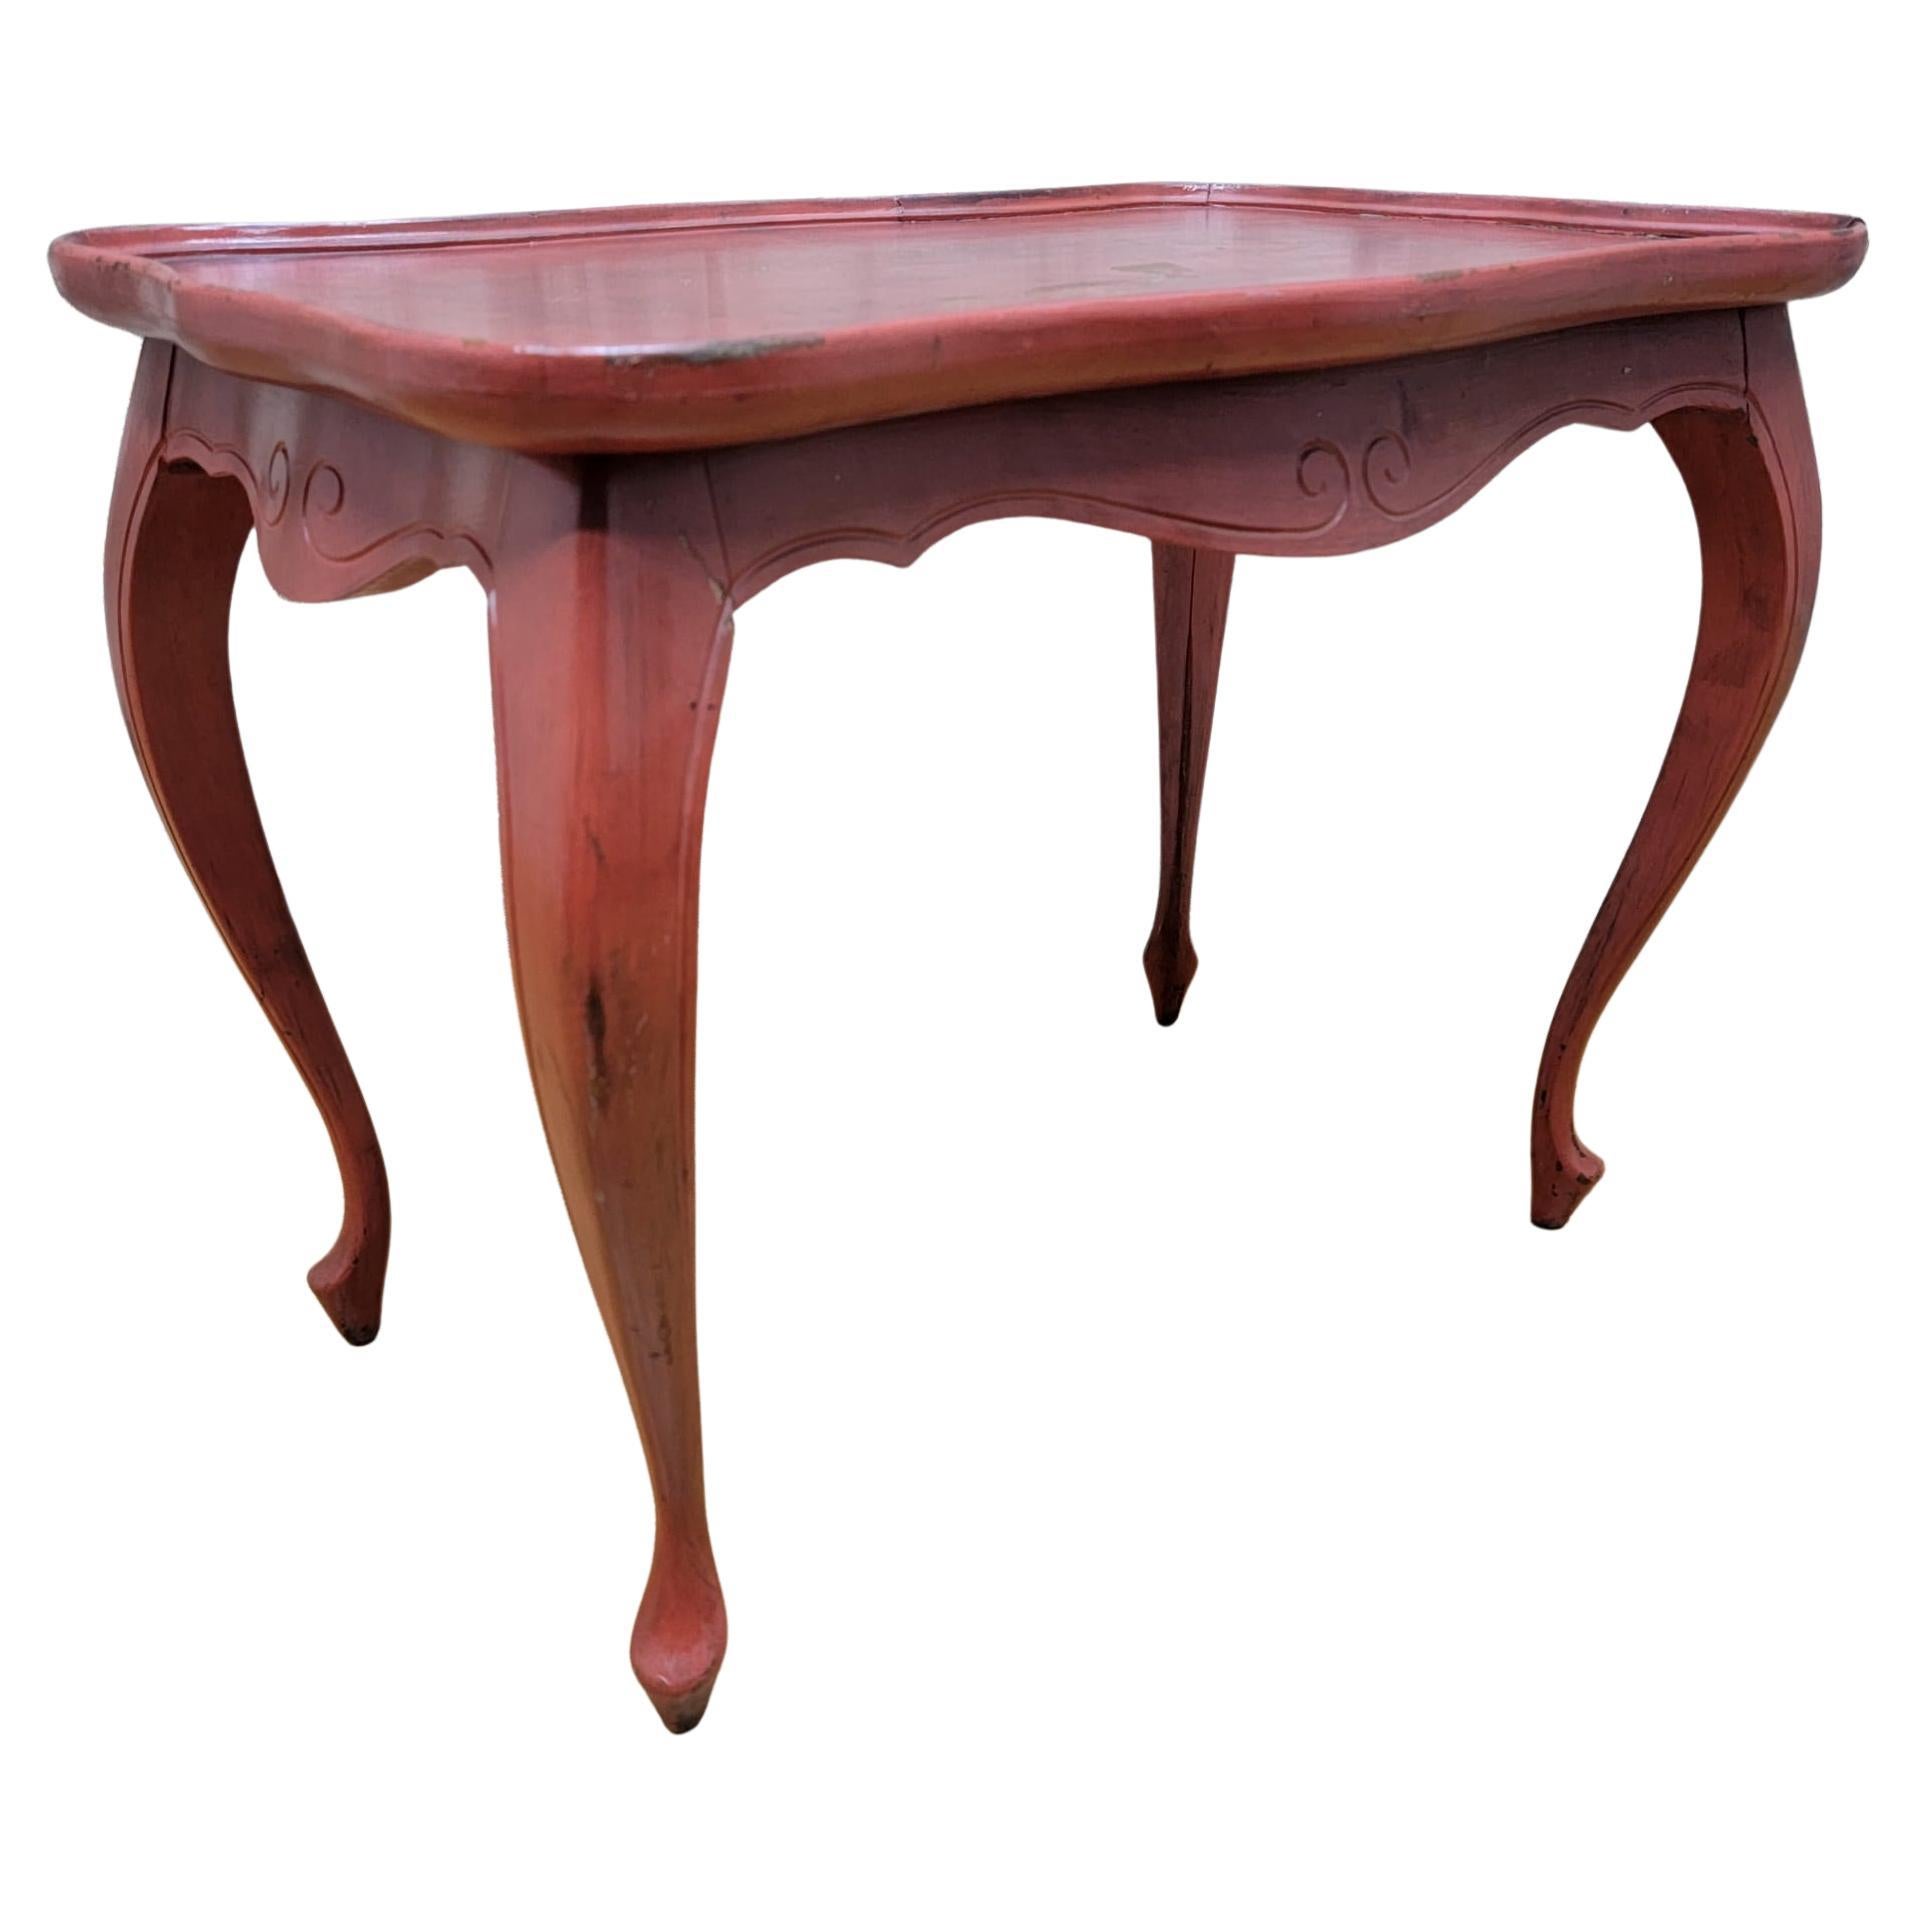 Table d'appoint vintage en chêne rouge peinte à la main